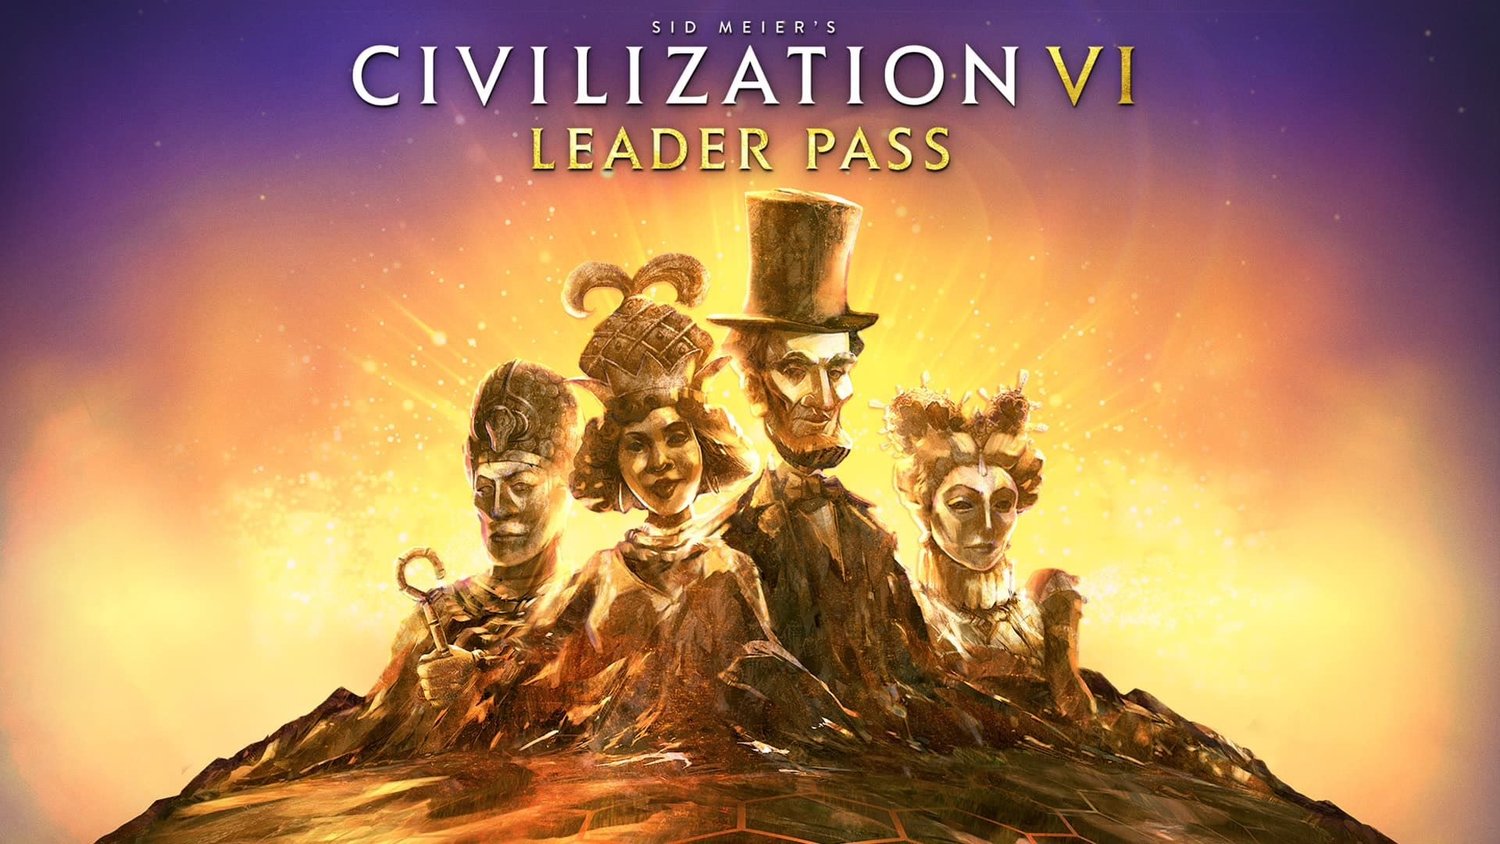 CIVILIZATION VI obtient de nouveaux leaders cet hiver avec le DLC Leader Pass